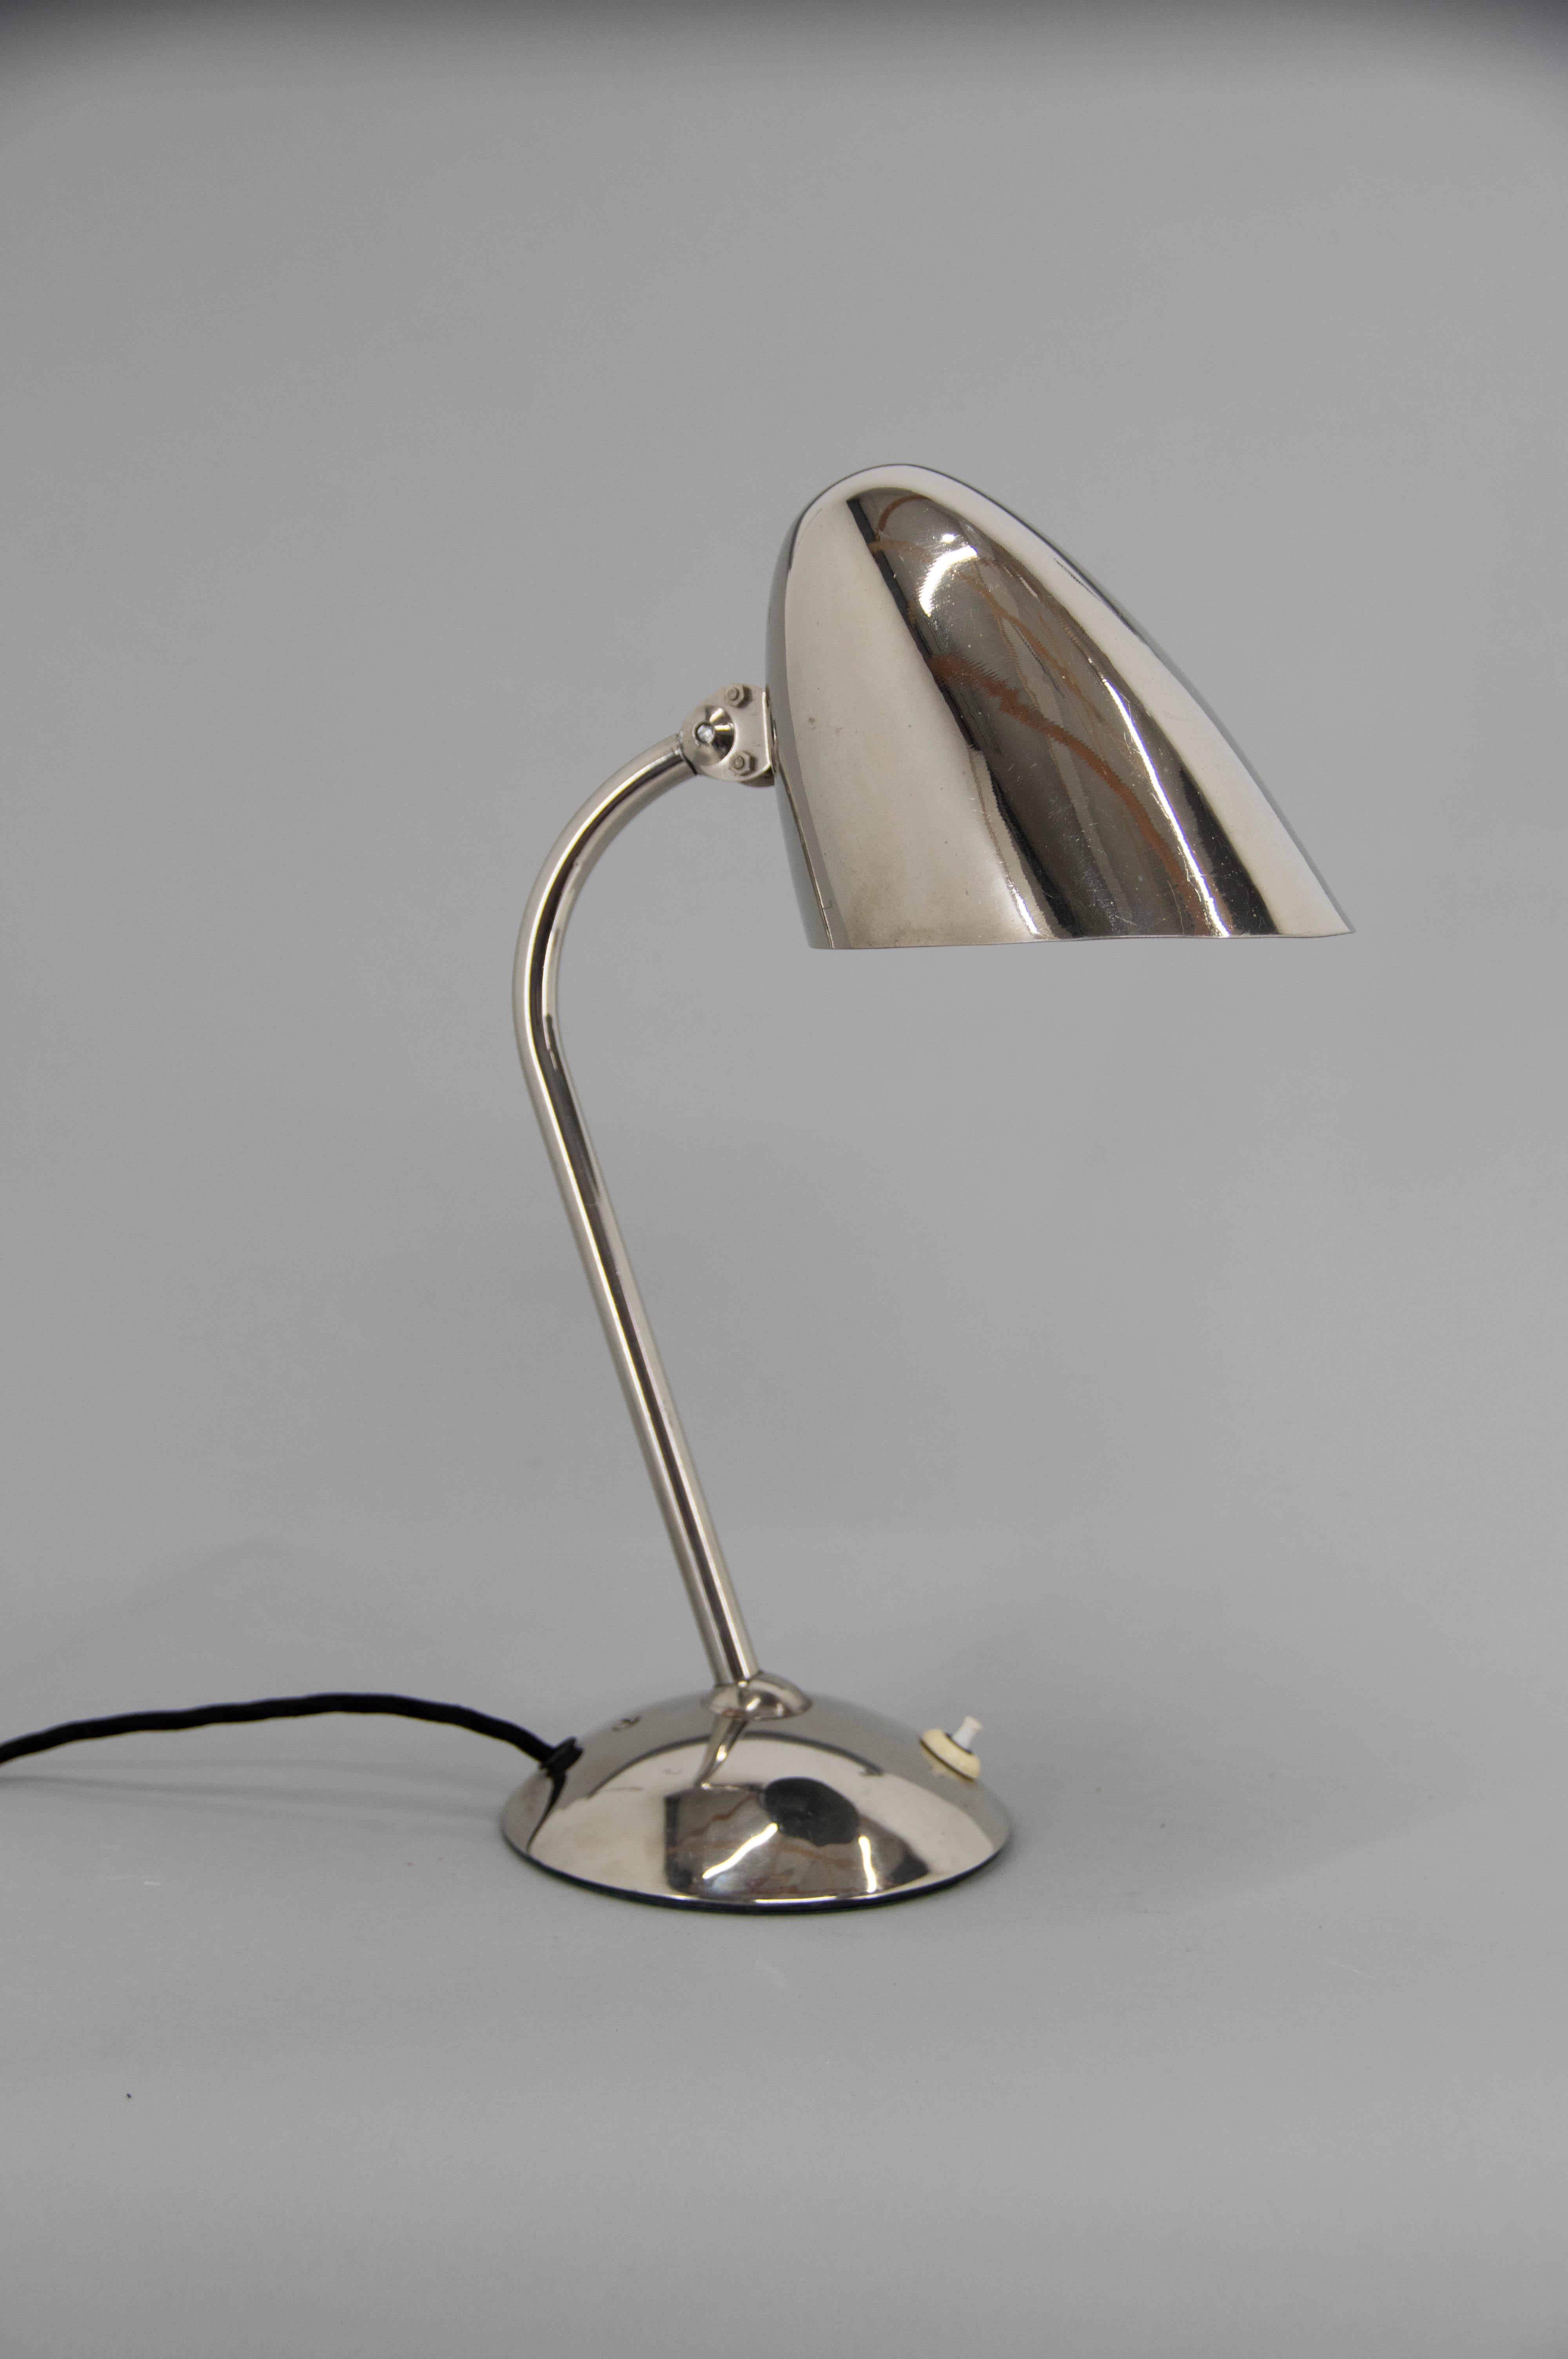 Ikonische Tischleuchte von Franta Anyz. Sehr gut erhaltene vernickelte Version.
Diese Lampe ist berühmt für ihre patentierten Anyz-Gelenke, die den Schirm so flexibel wie möglich machen.
1x40W, E25-E27 Glühbirne
Inklusive US-Steckeradapter.